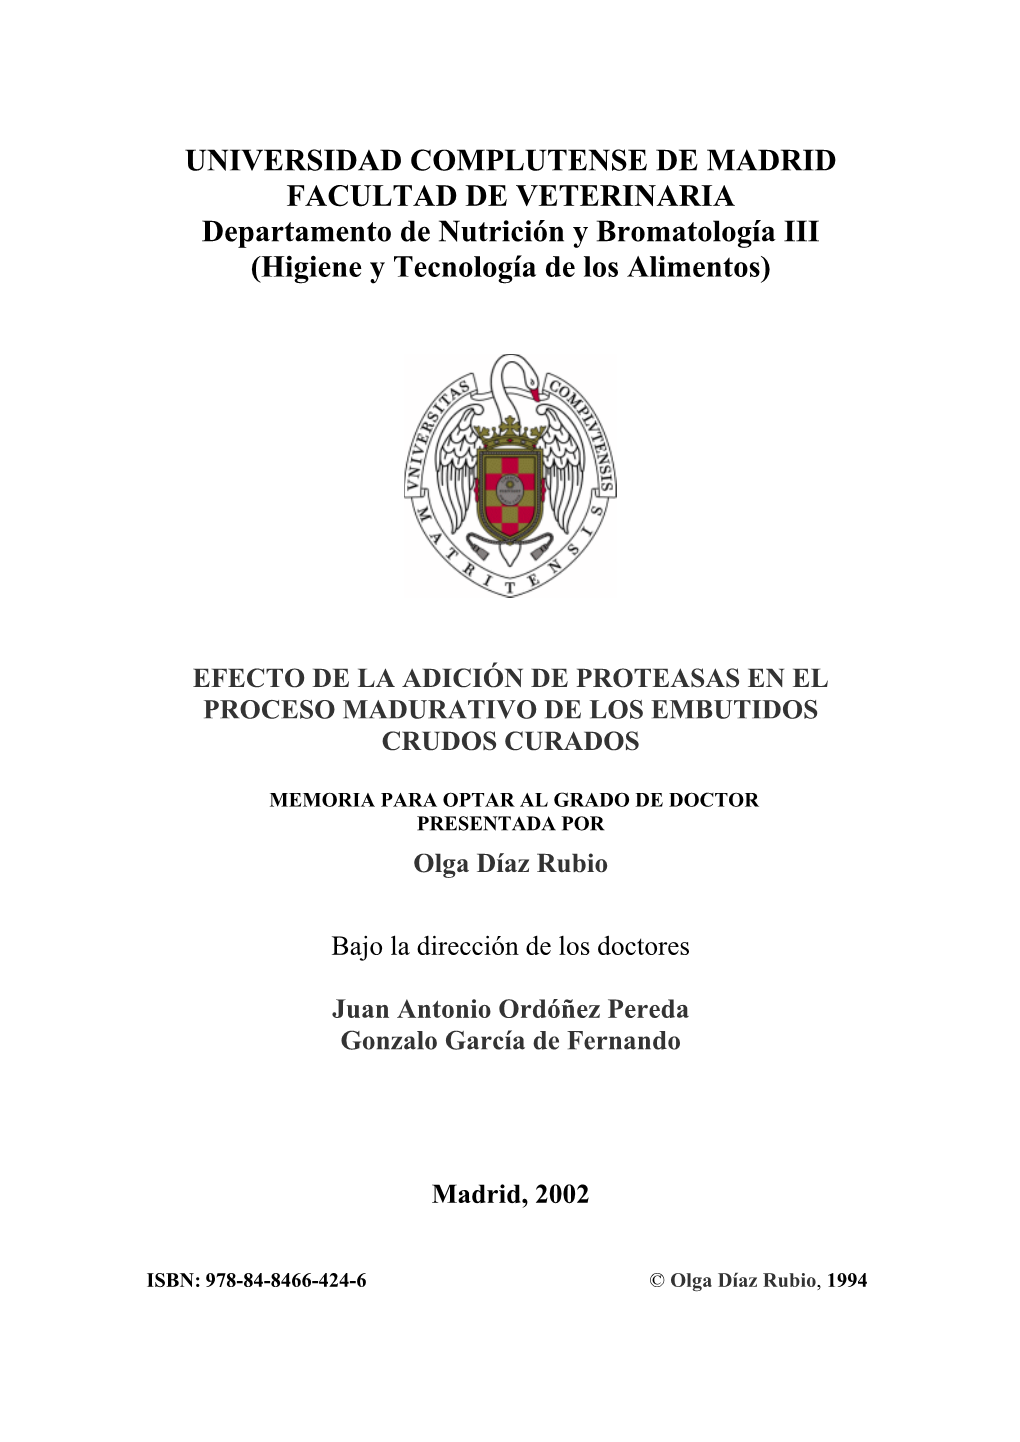 UNIVERSIDAD COMPLUTENSE DE MADRID FACULTAD DE VETERINARIA Departamento De Nutrición Y Bromatología III (Higiene Y Tecnología De Los Alimentos)